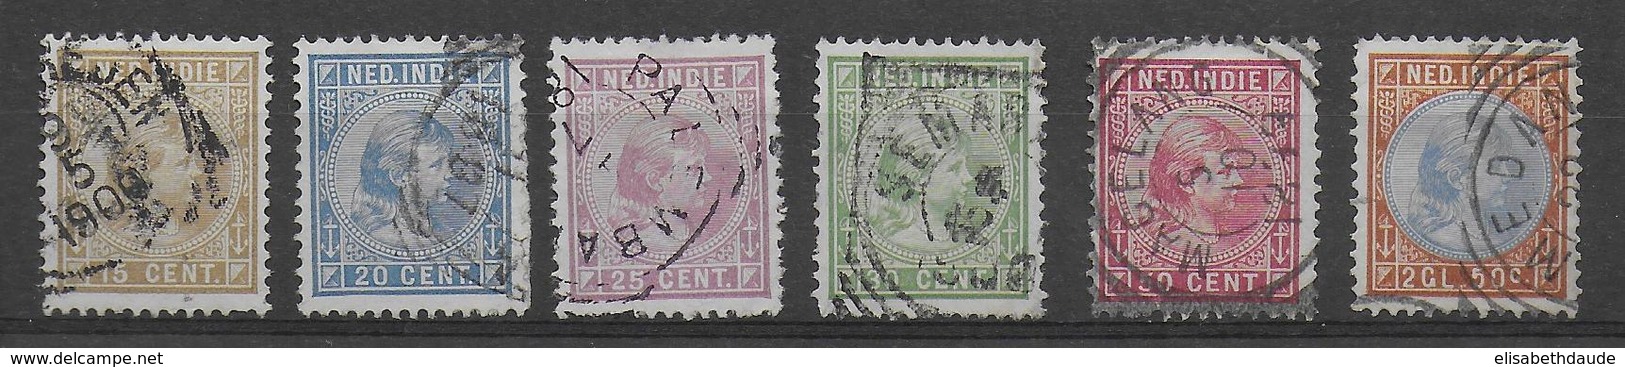 INDES NEERLANDAISES - 1891 - YT N° 25/30 OBLITERES - COTE = 65 EUR - Nederlands-Indië